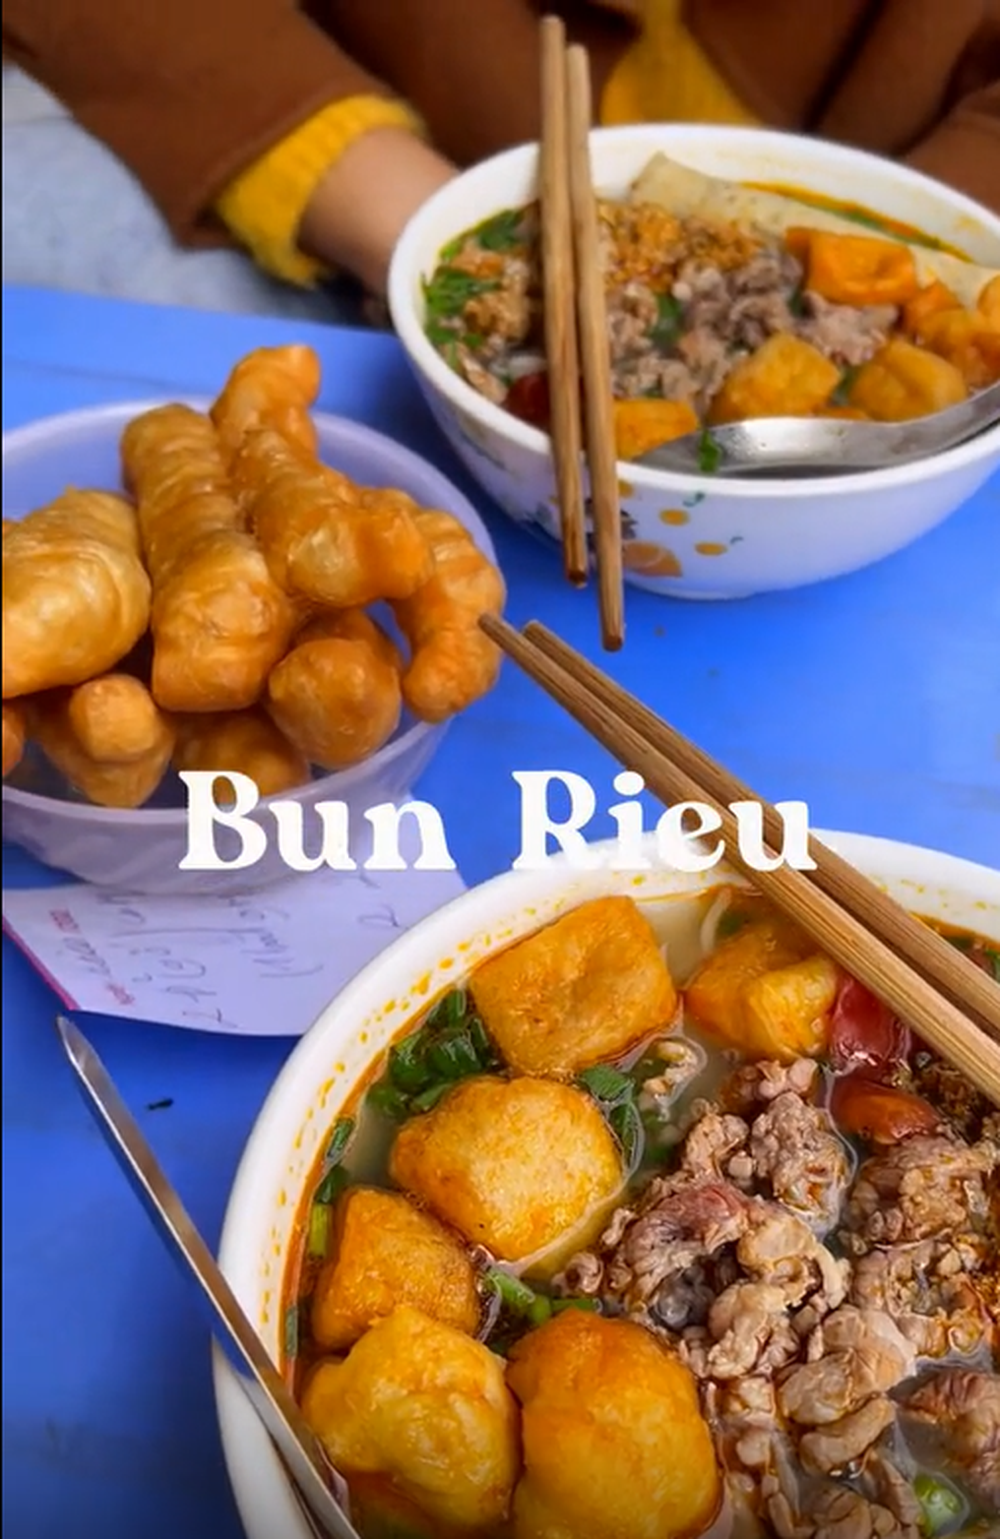 Khách nước ngoài lựa chọn 4 món từ sợi tuyệt nhất trong ẩm thực Việt - ảnh 2